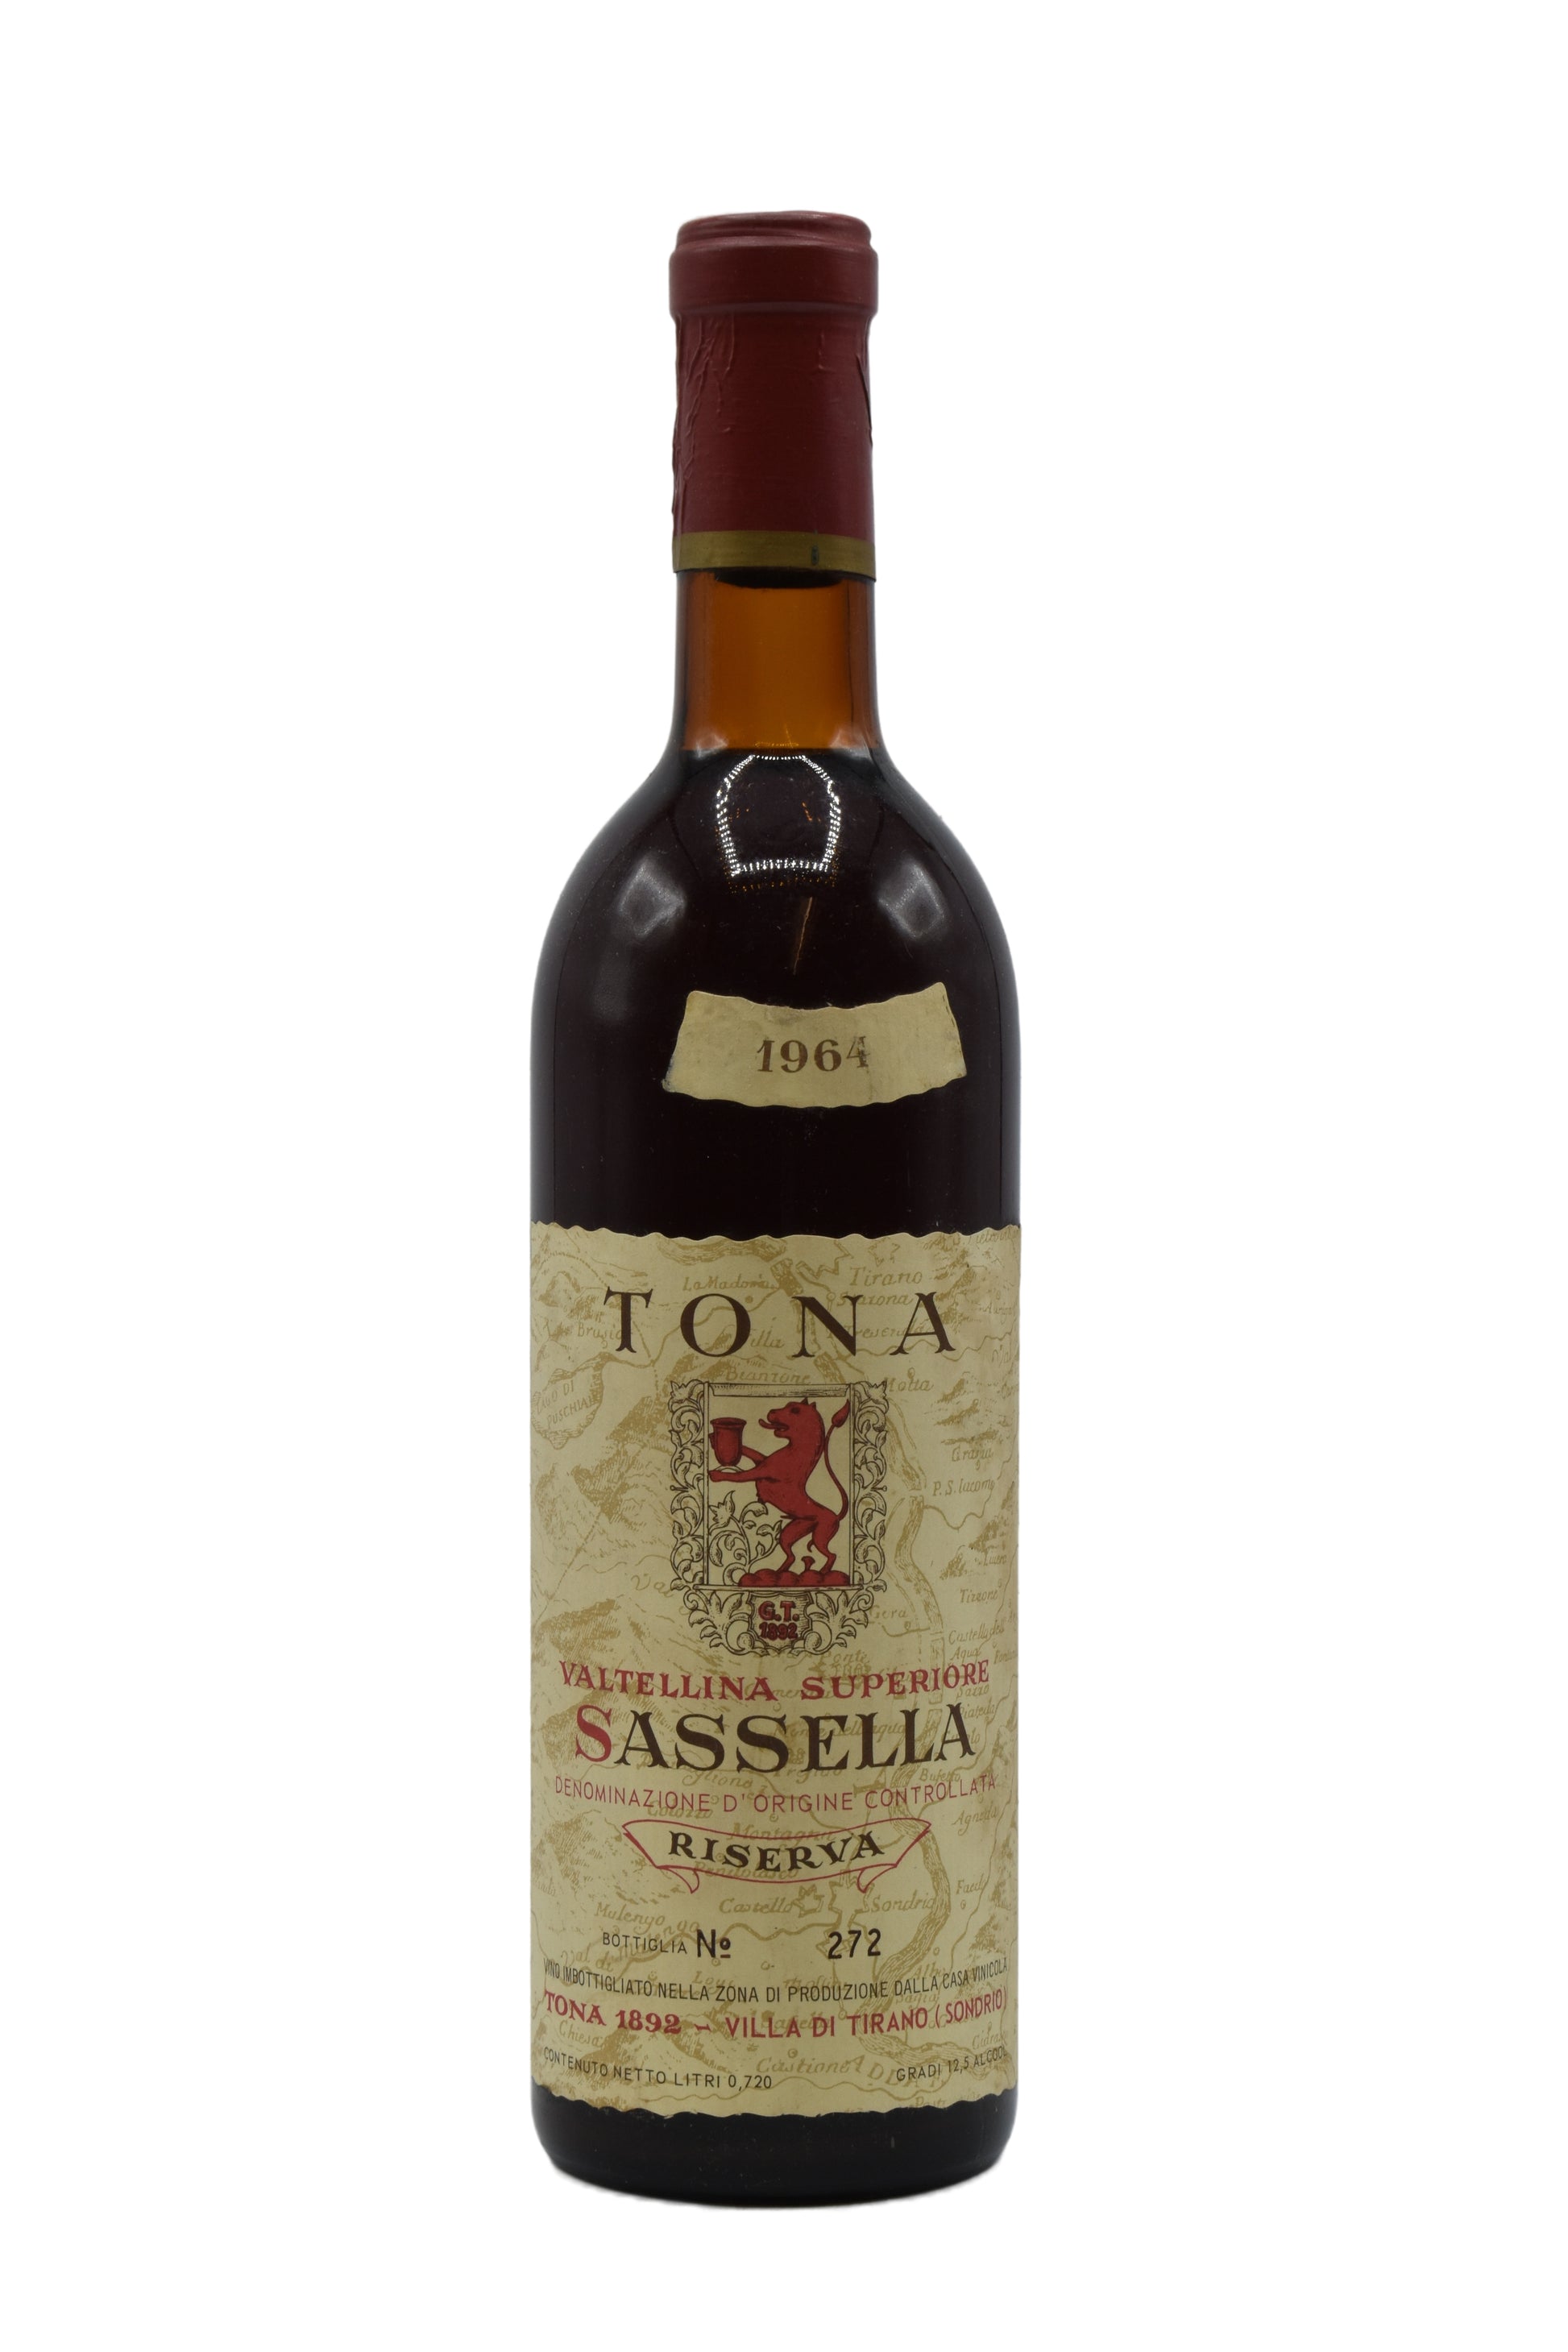 1964 Tona, Villa di Tirano Valtellina Superiore - Sassella Riserva 750ml - Walker Wine Co.